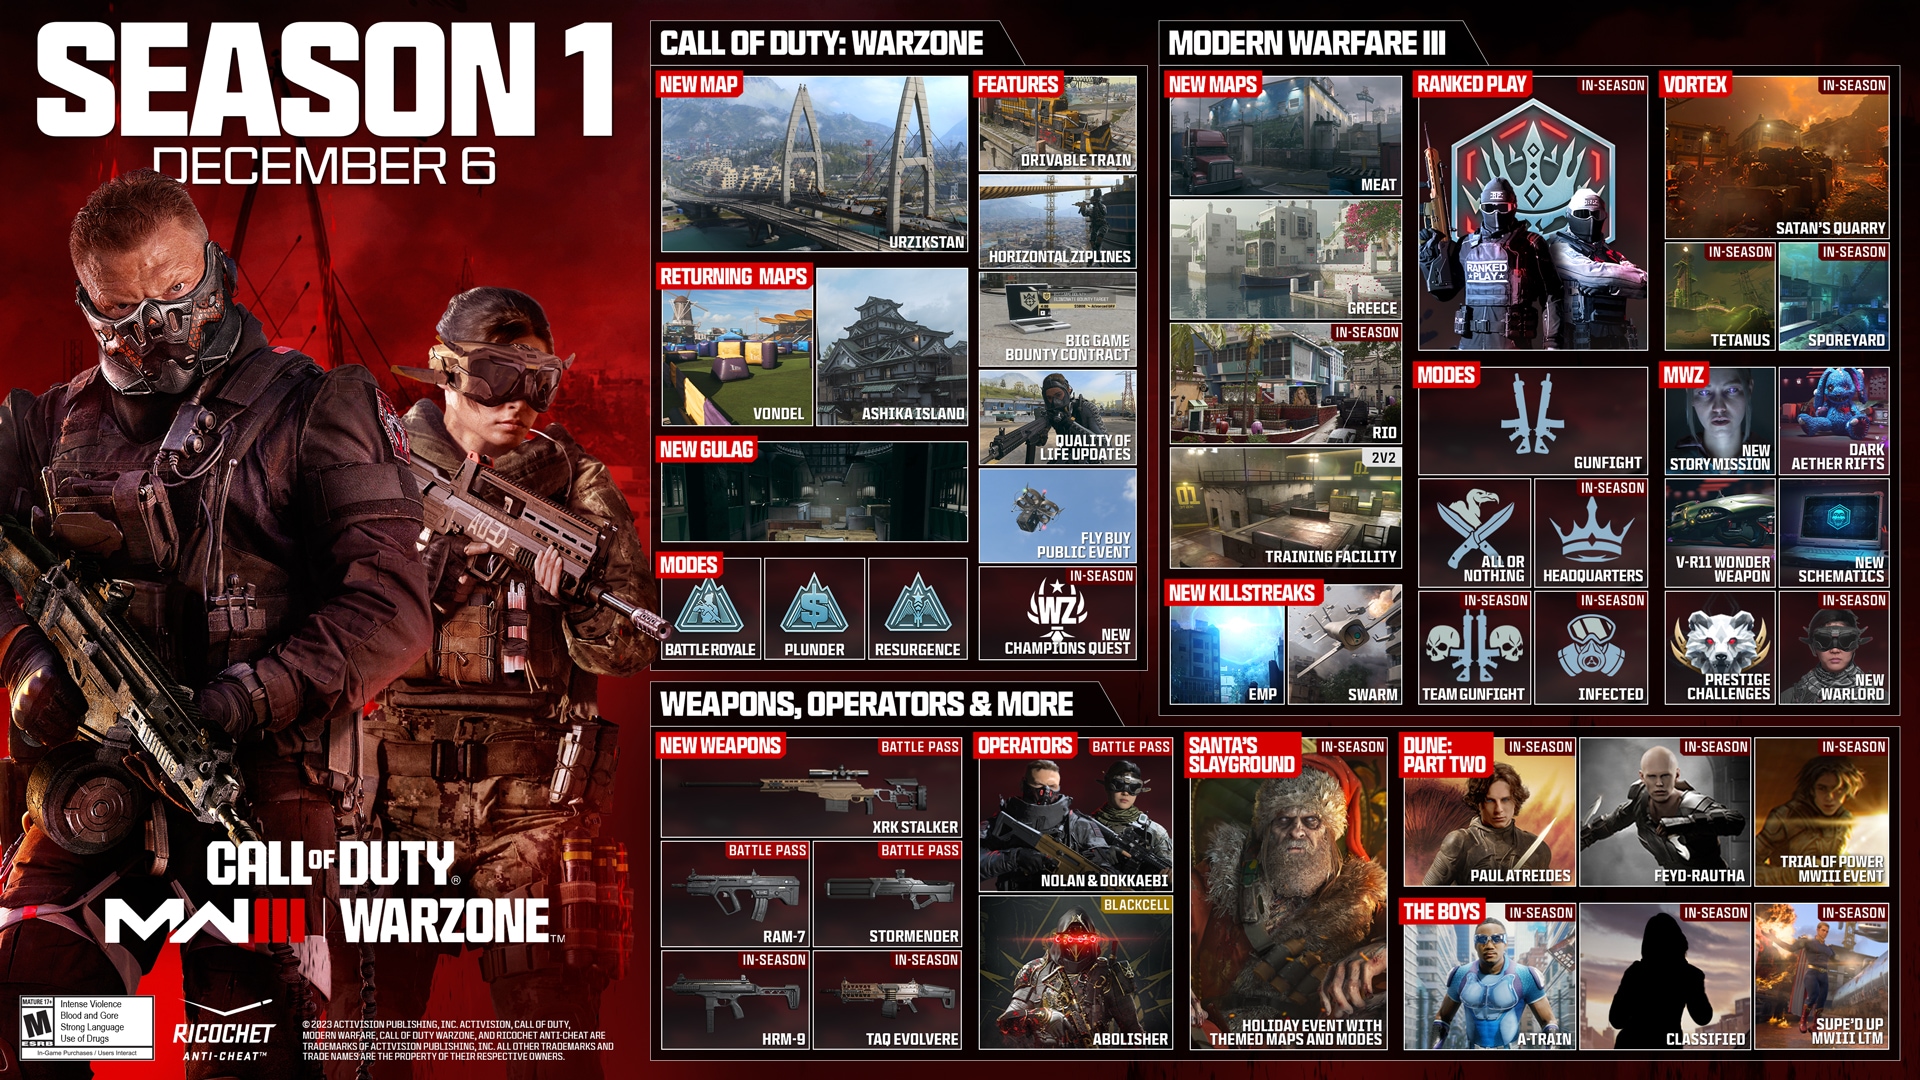 Todo lo que necesitas saber sobre la Temporada 1 de Call of Duty: Modern Warfare III y Call of Duty: Warzone